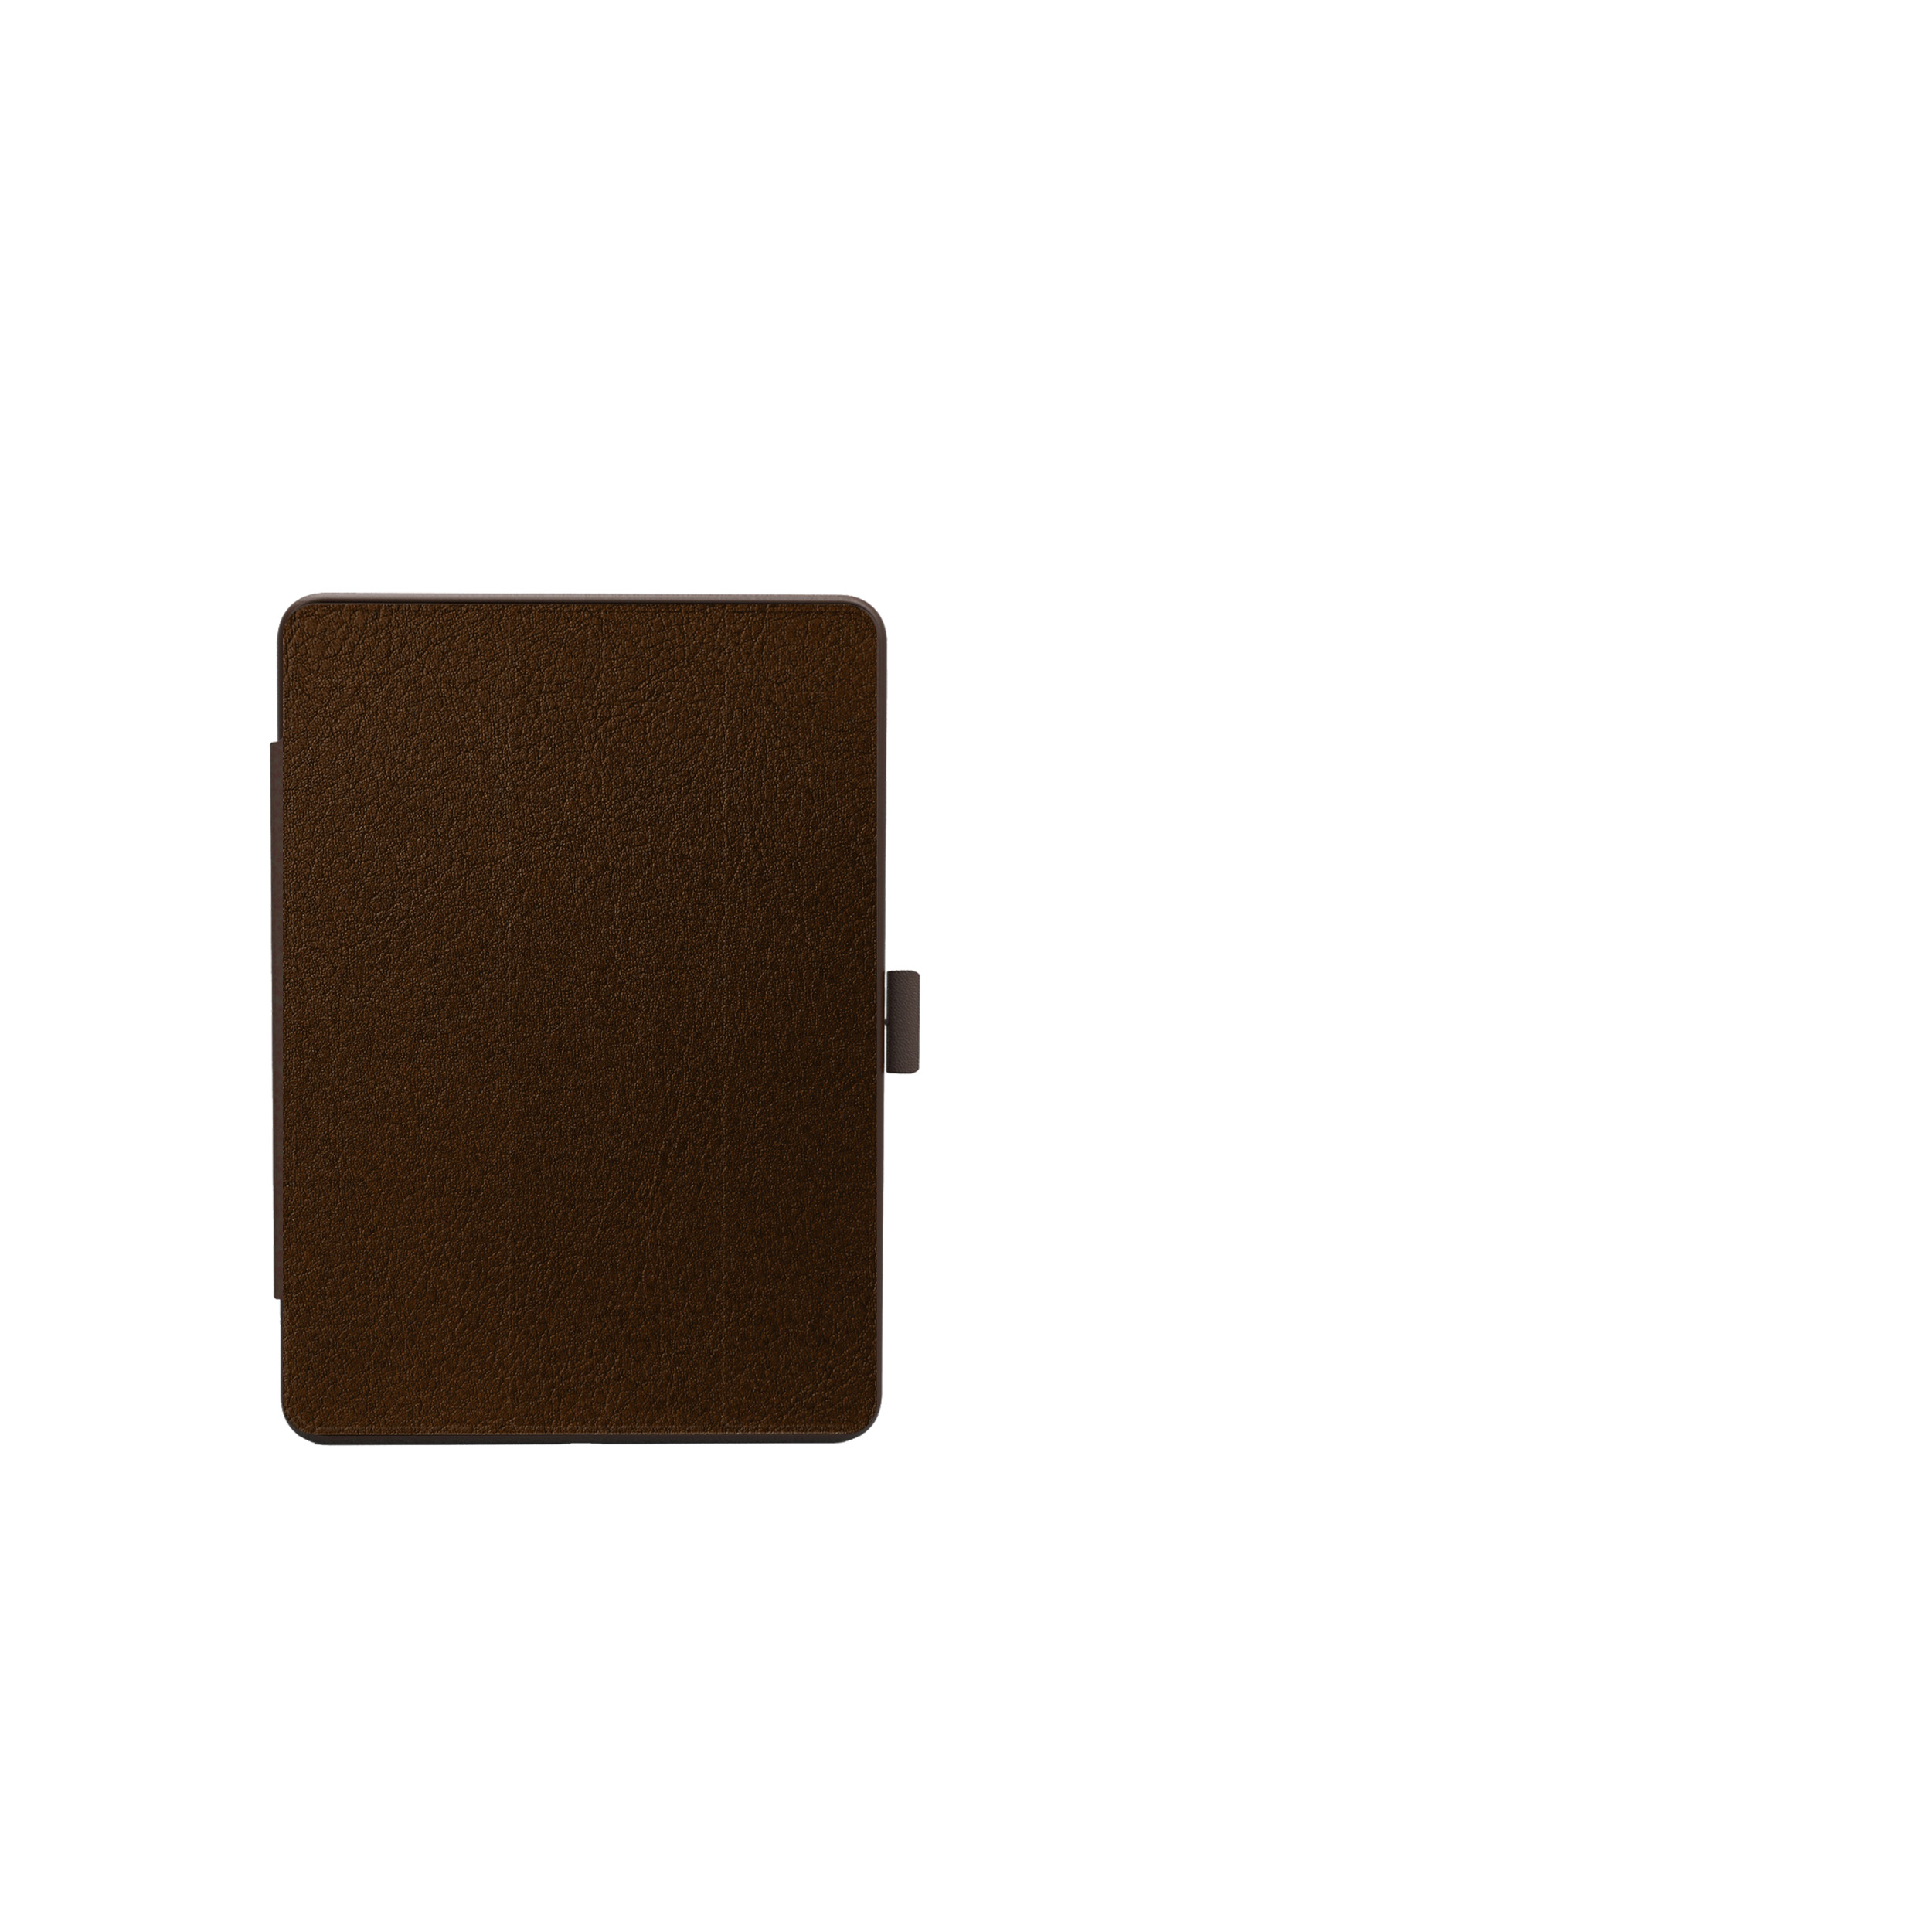 KMP Schutzhülle für iPad Stiftfach für brown Material choco Silikon, Backcover Choco Protective mit Mirkofaser, Apple case Brown 9,7 biobasiertes in PC, Lederoptik